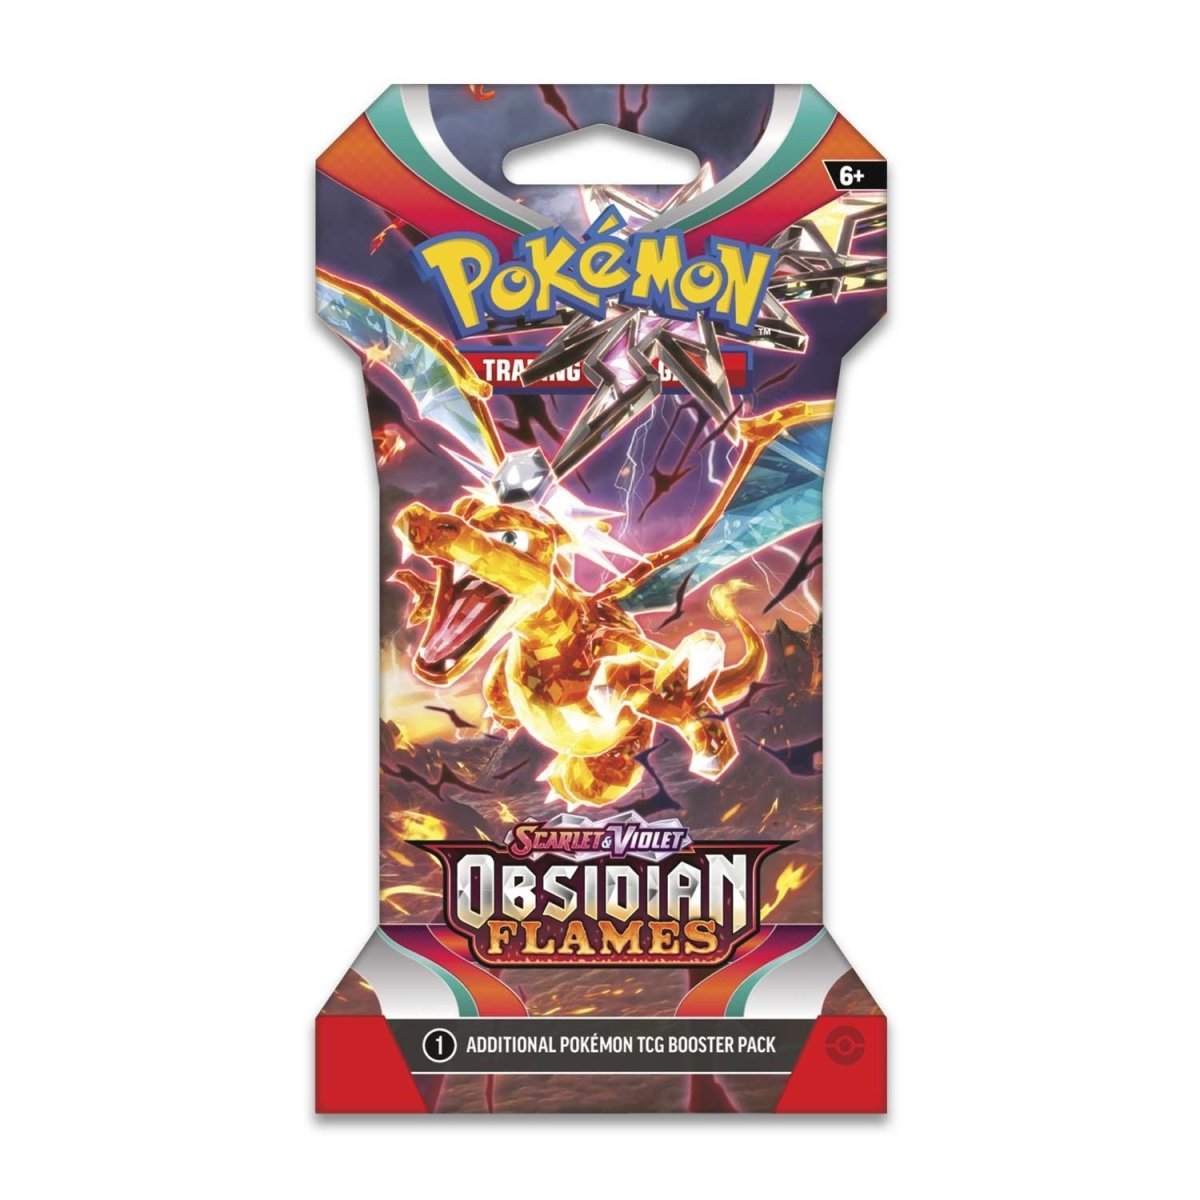 Pokémon Trading Card Game: Scarlet & Violet SV03 - Obsidian Flames - Sleeved Booster Pack